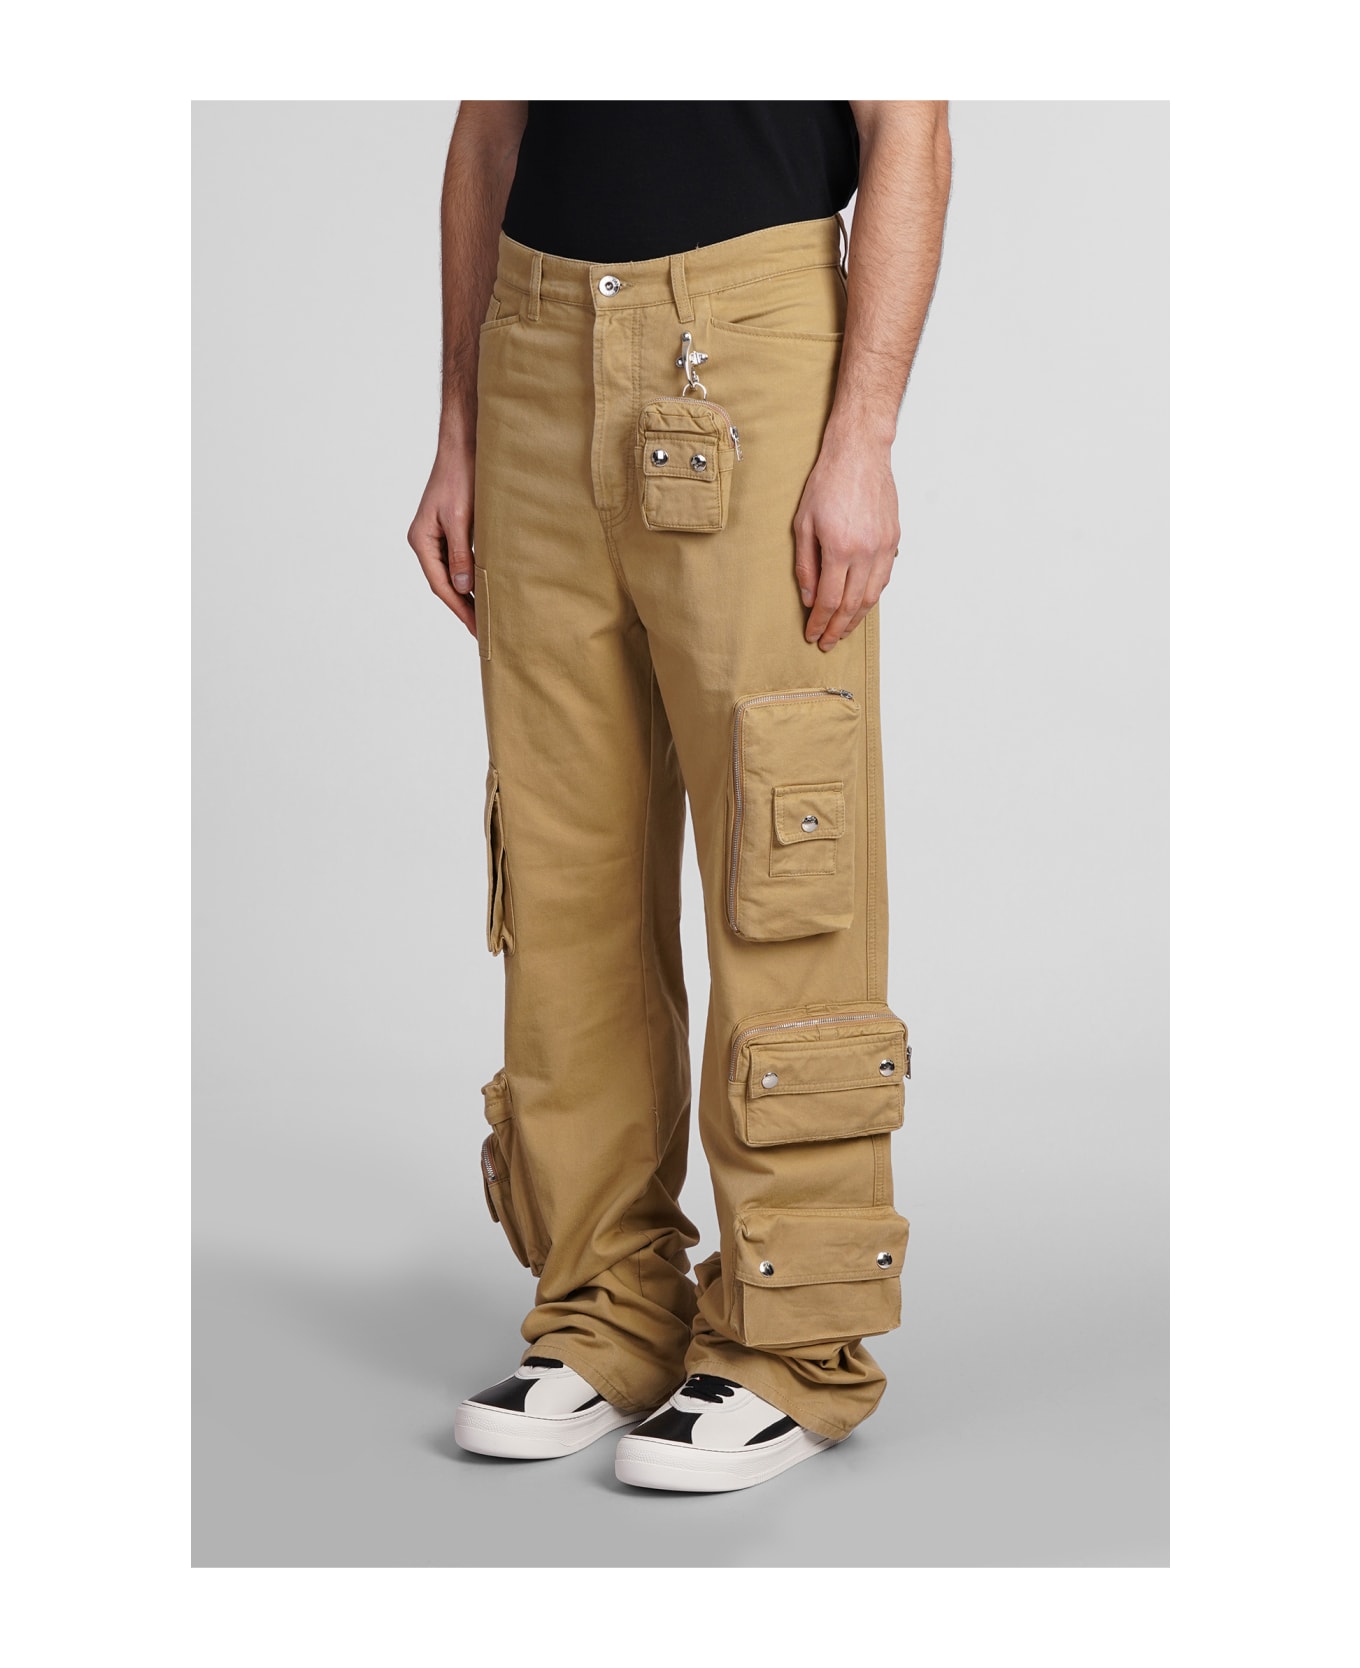 Lanvin Jeans In Beige Cotton - beige ボトムス